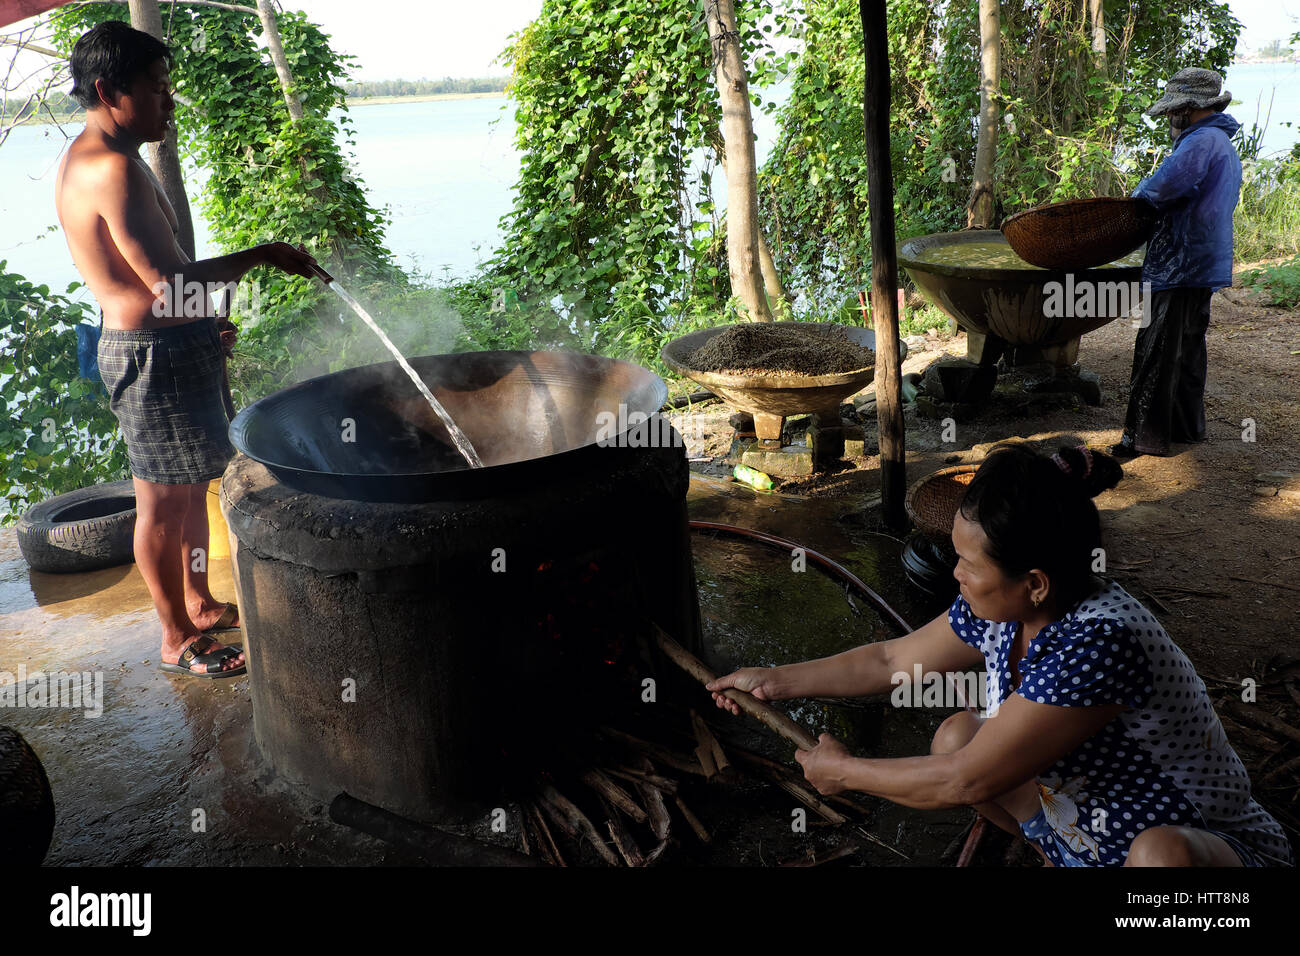 HOI AN, VIET NAM- Feb 17, 2016 : processus de vietnamiens, ils moules cuire les fruits de mer à faire bouillir de l'eau par le bois, moule en célèbre dans Hoian, Vietnam Banque D'Images